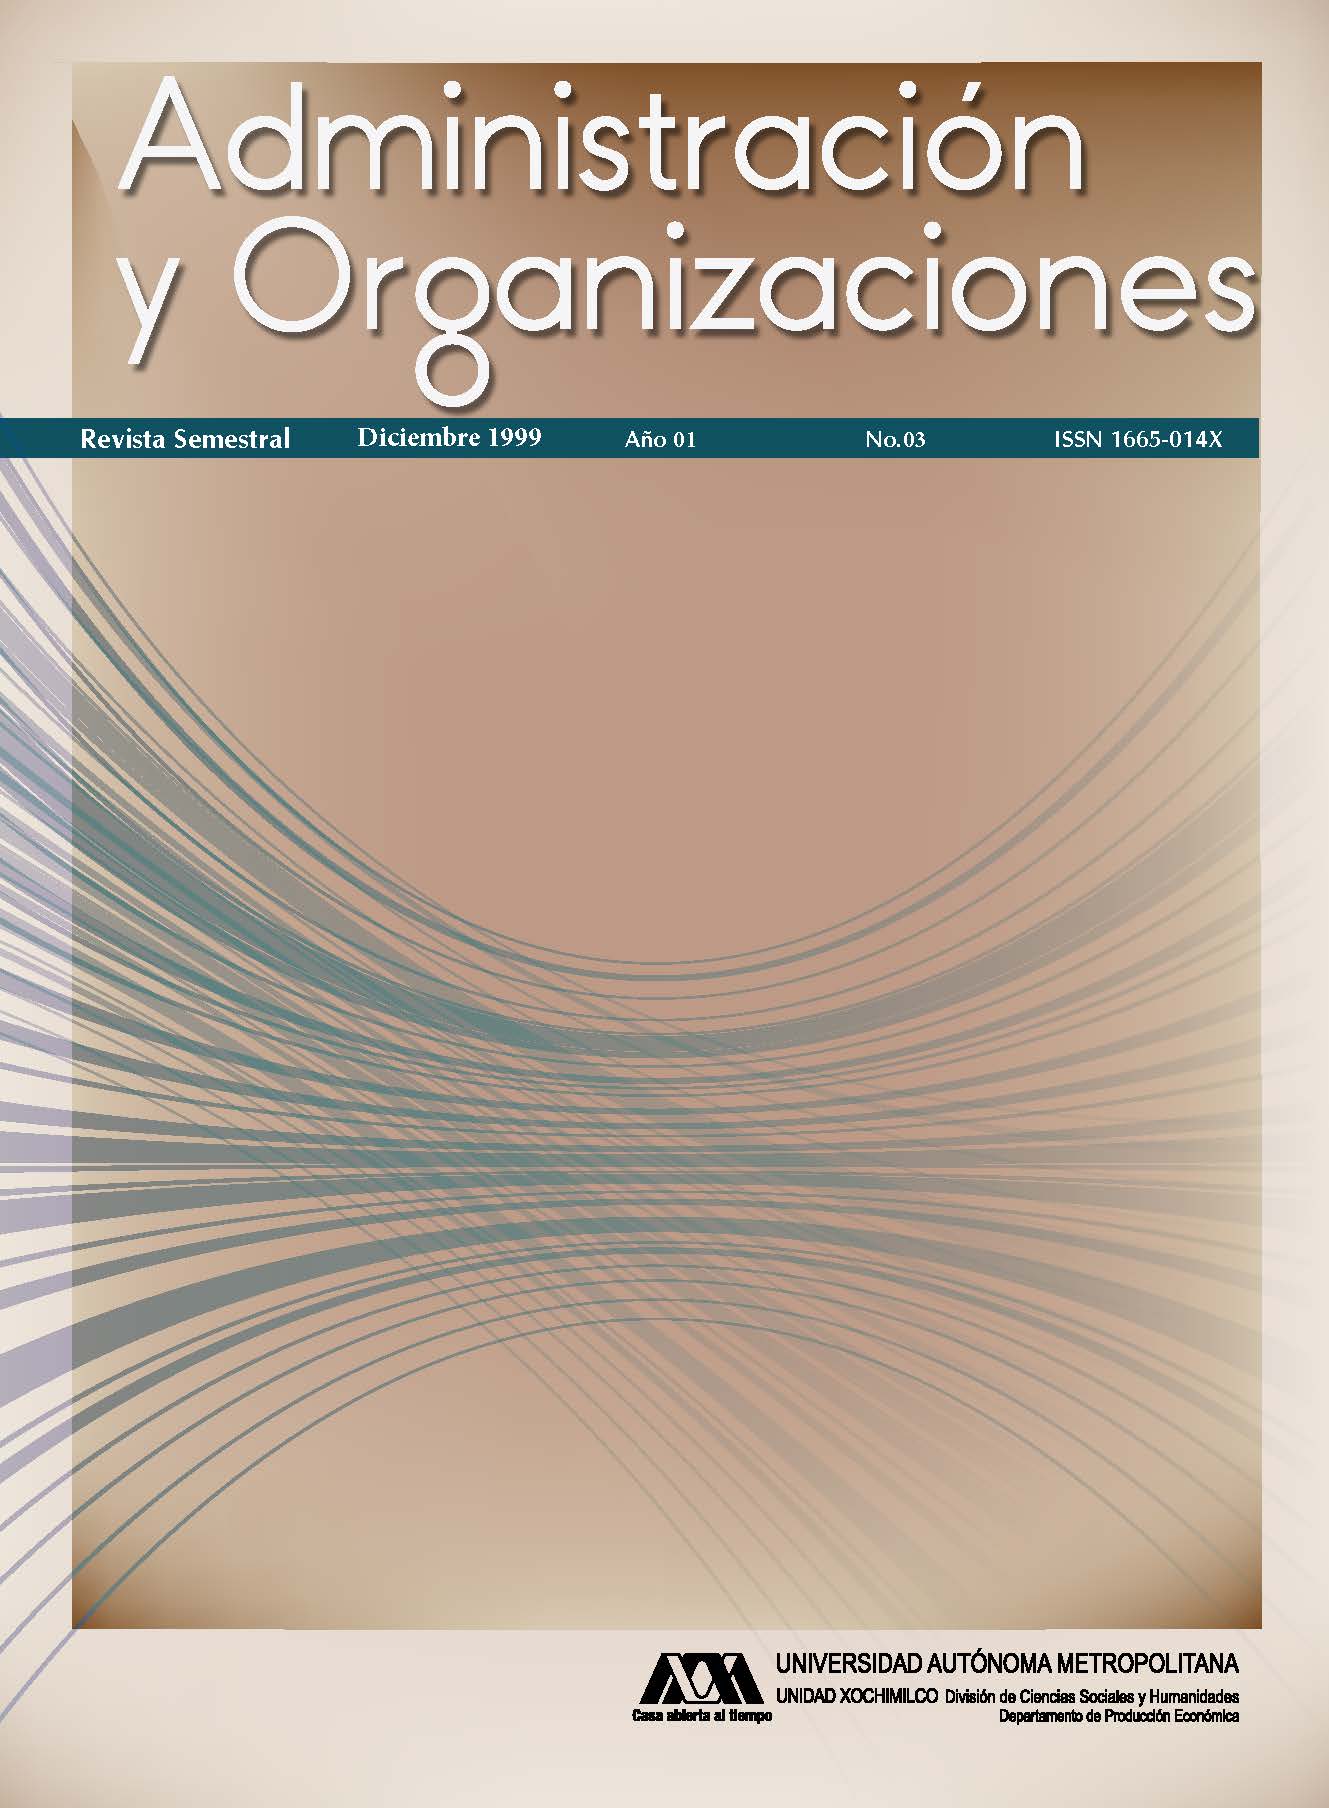 					Ver Vol. 1 Núm. 03 (1): Administración y Organizaciones
				